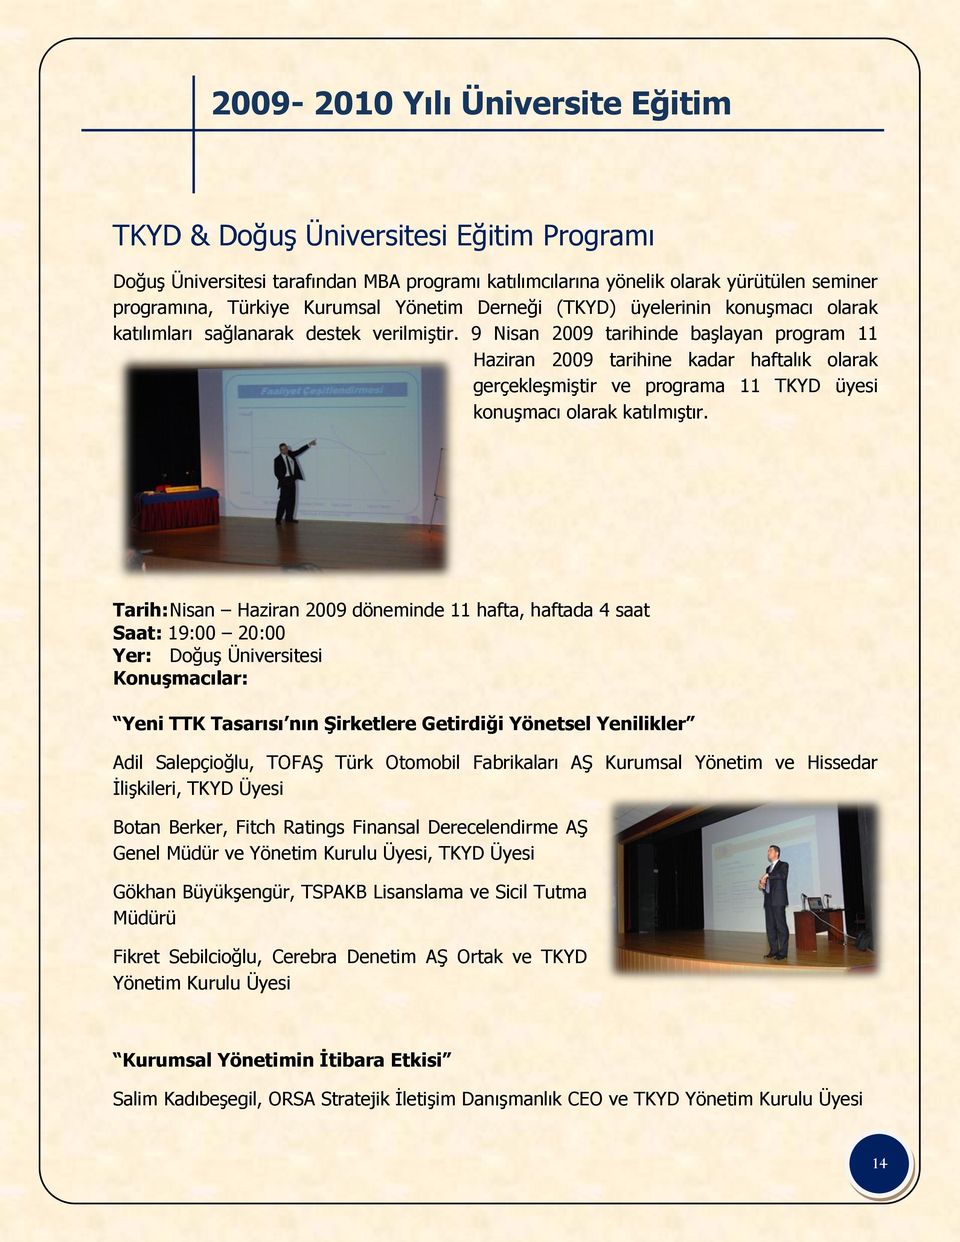 9 Nisan 2009 tarihinde başlayan program 11 Haziran 2009 tarihine kadar haftalık olarak gerçekleşmiştir ve programa 11 TKYD üyesi konuşmacı olarak katılmıştır.